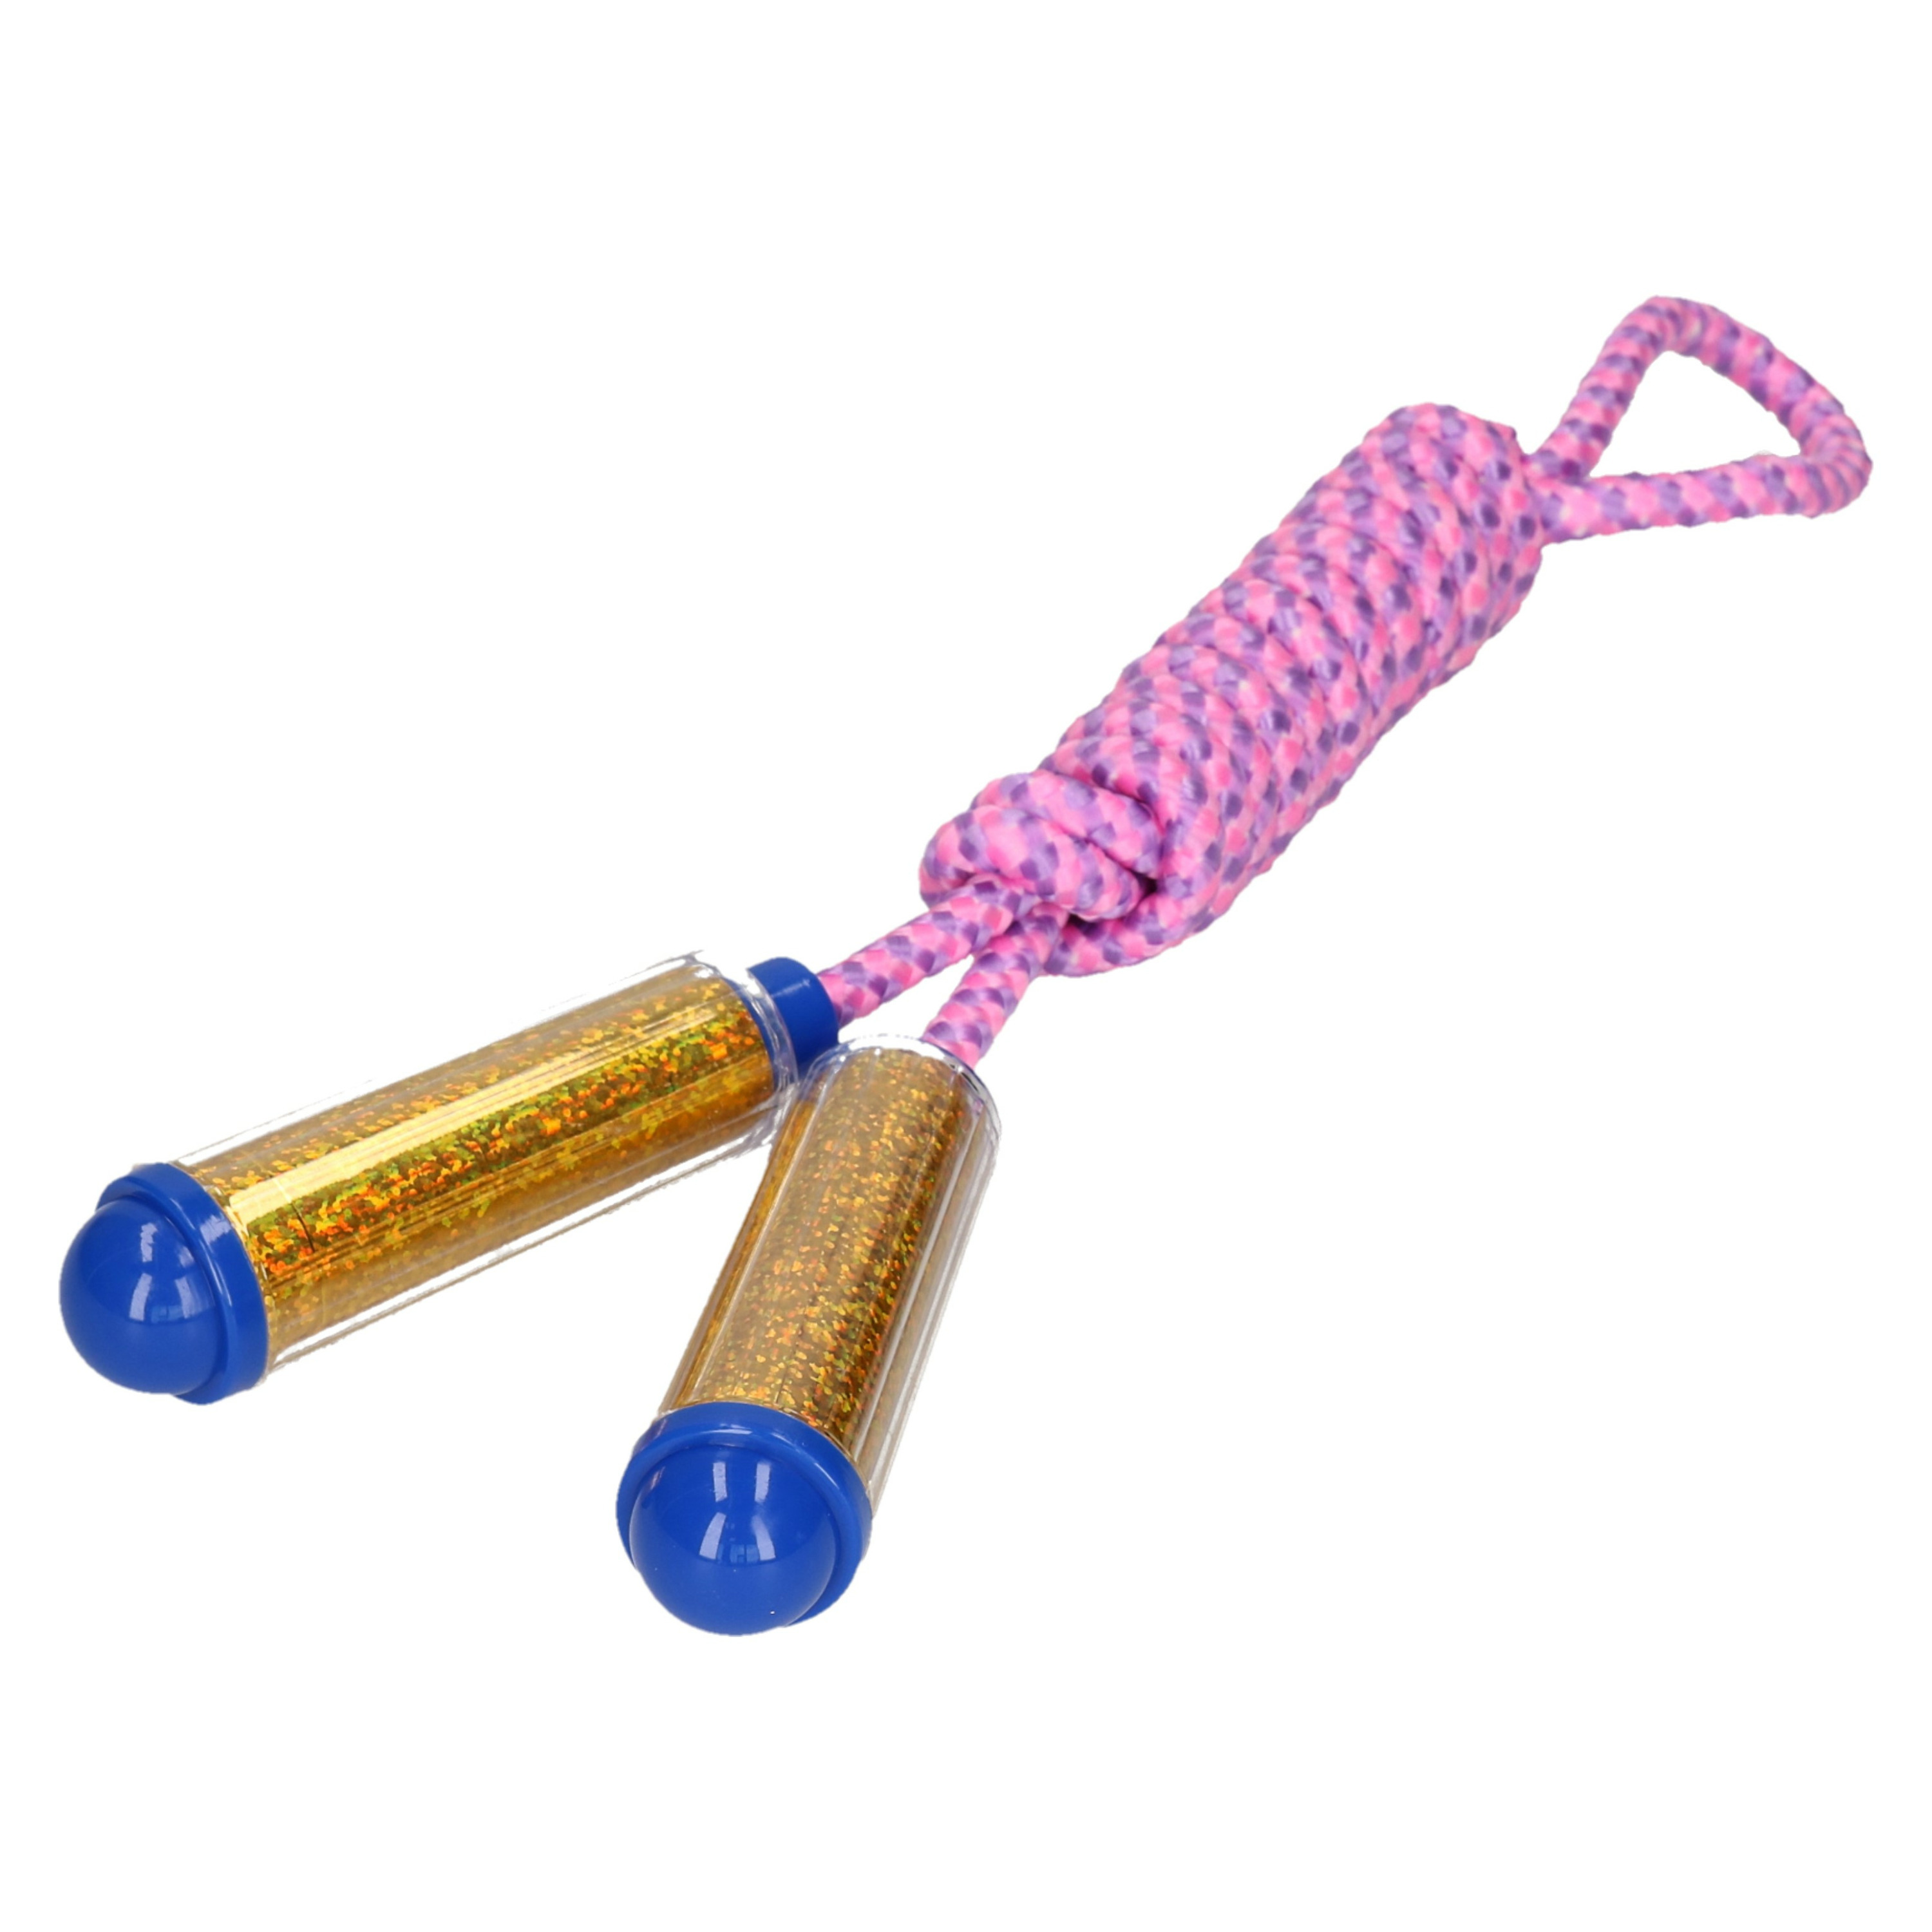 Springtouw - met kunststof handvatten - roze/goud - 210 cm - speelgoed